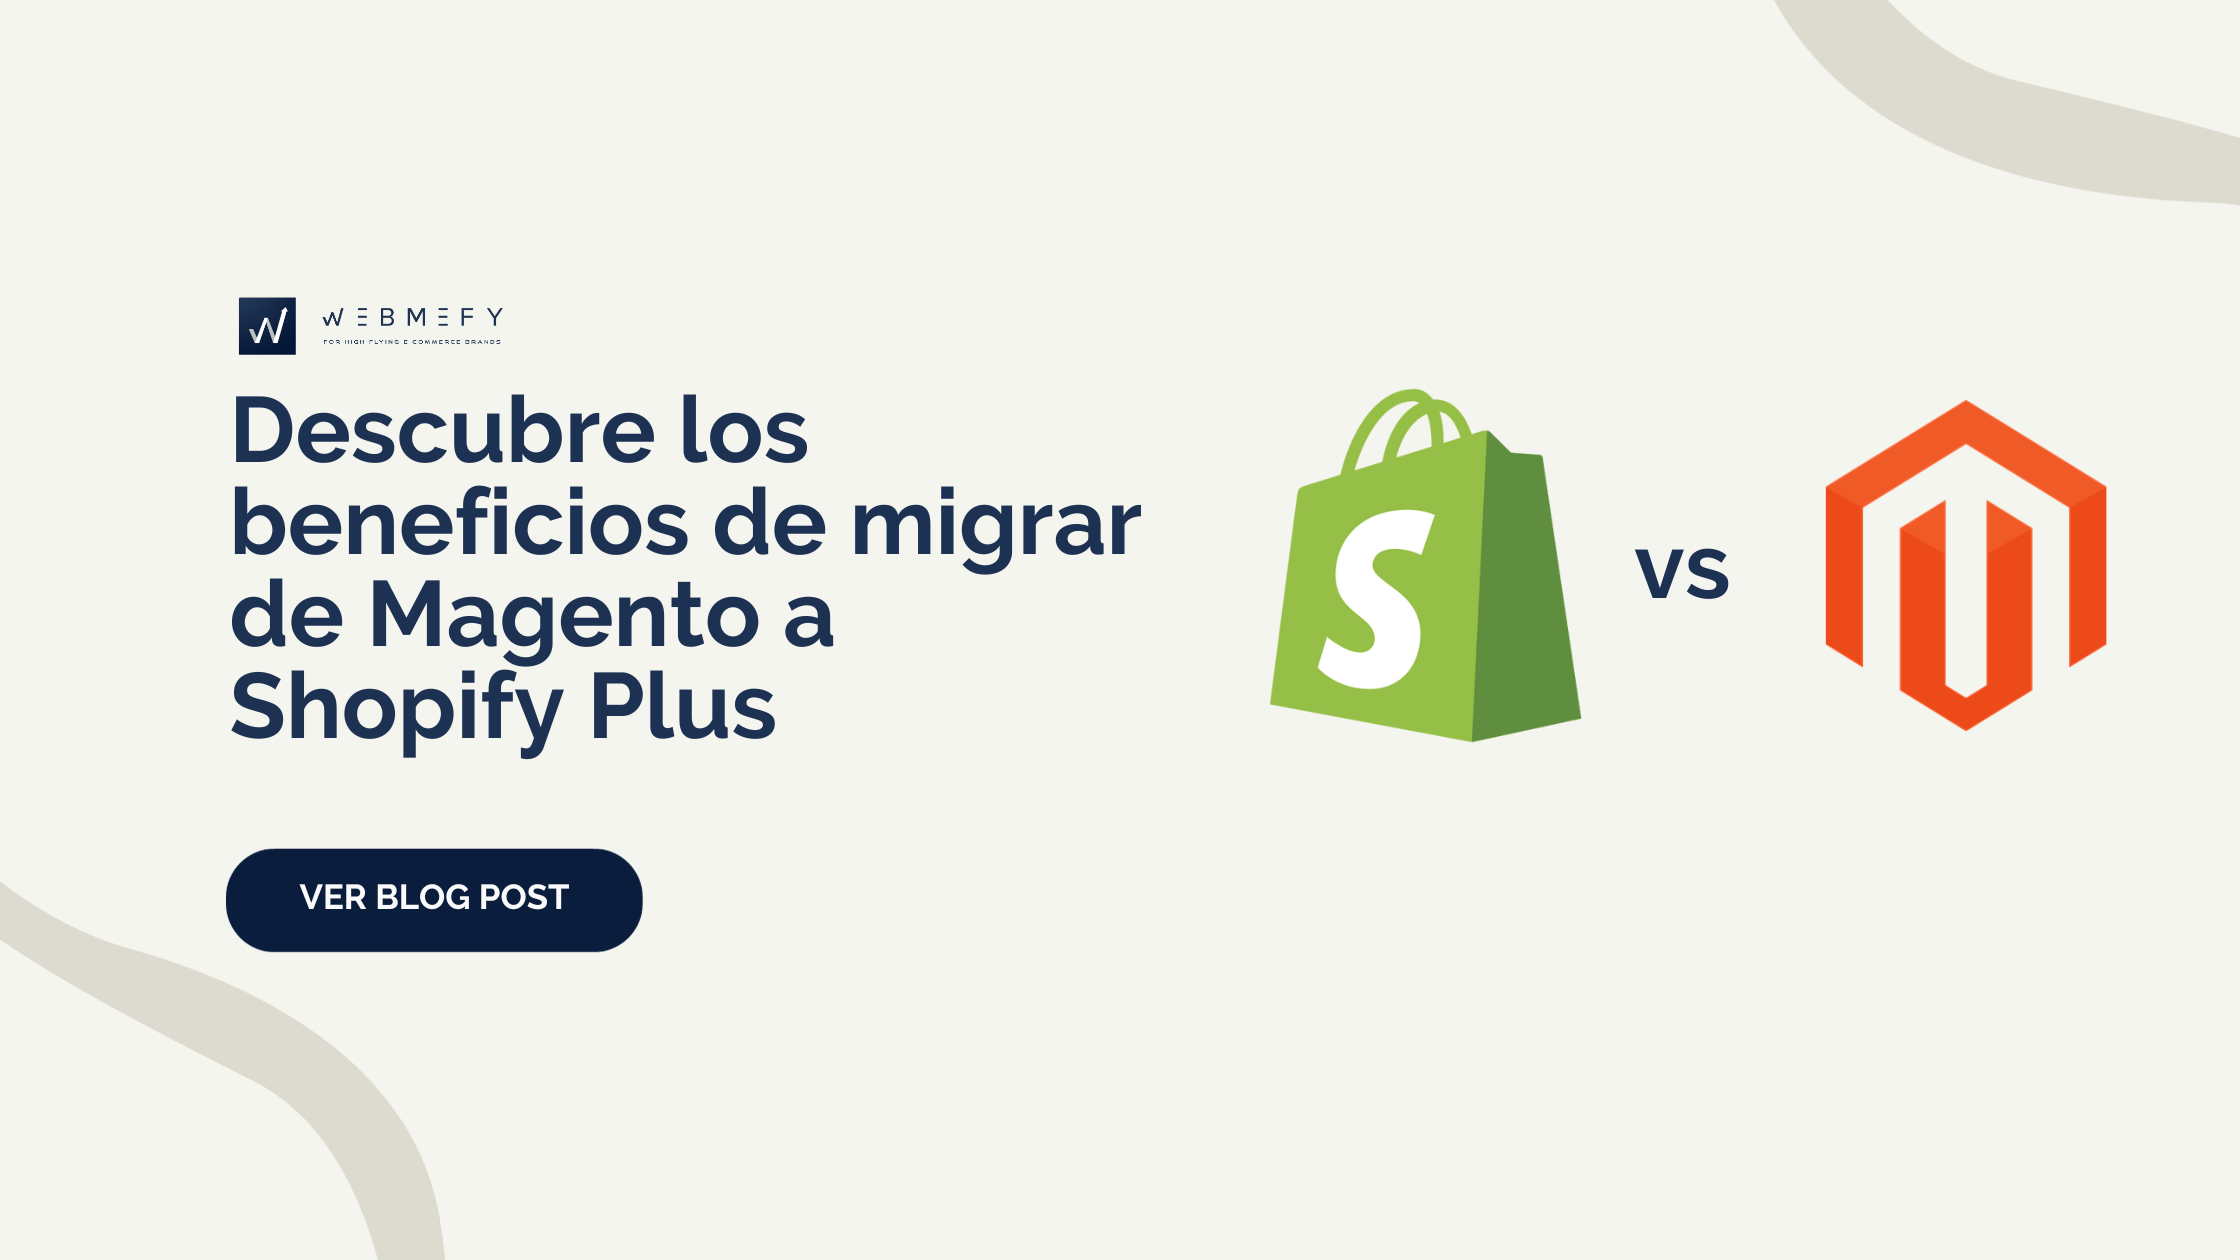 De Magento a Shopify Plus: ¡Una decisión rentable para tu negocio online!